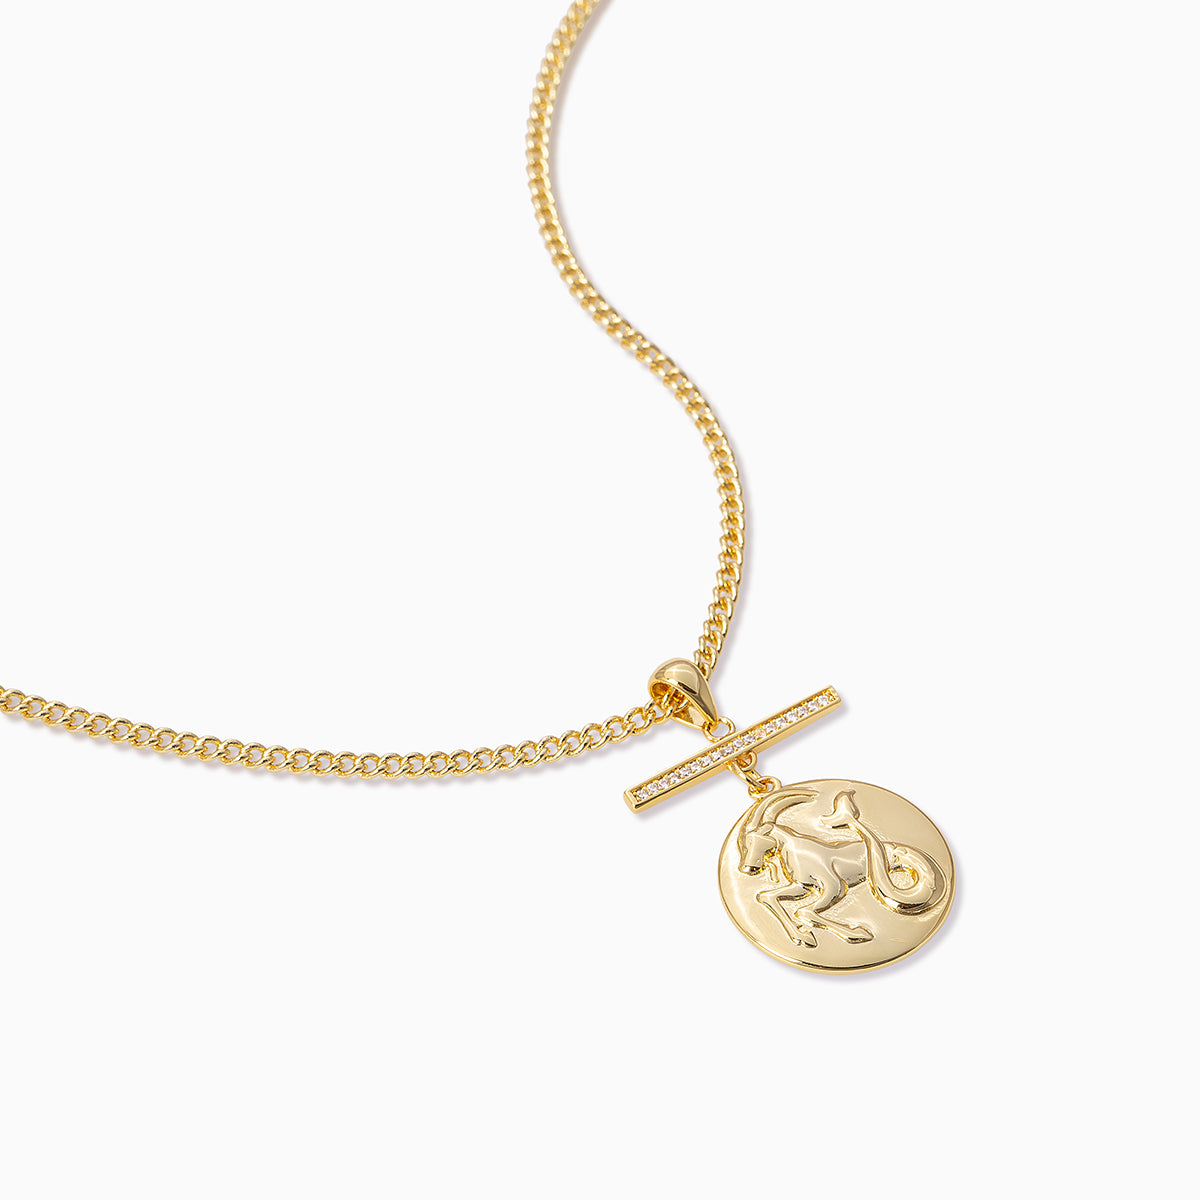 Zodiac Pendant Necklace | Aquarius Aries Cancer Capricorn Gemino Leo Libra Pisces Sagittarius Scorpio Taurus Virgo | Product Detail Image | Uncommon James